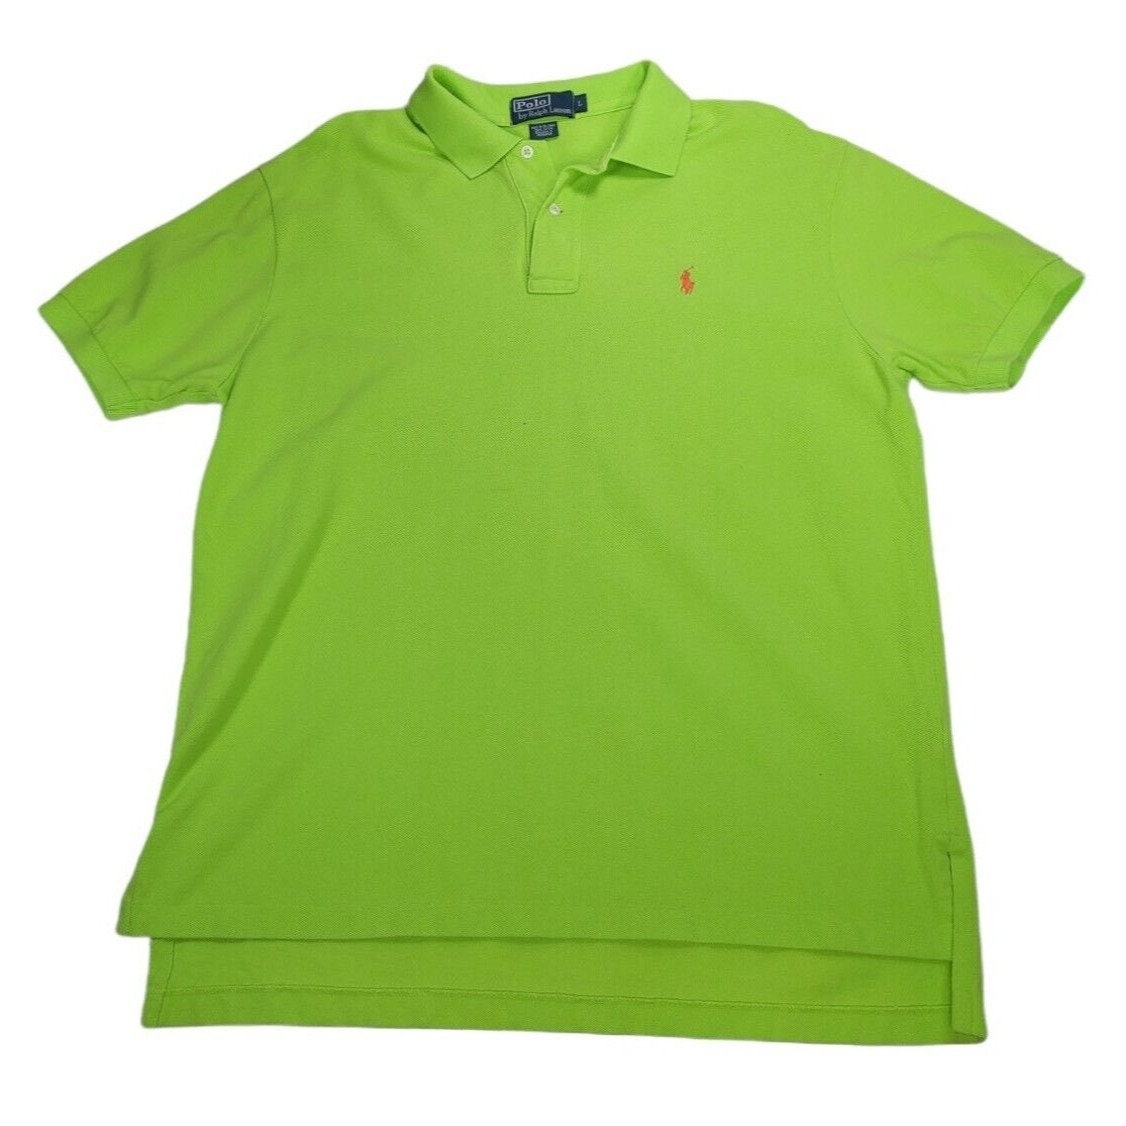 Men's Lime Green Polo Shirt